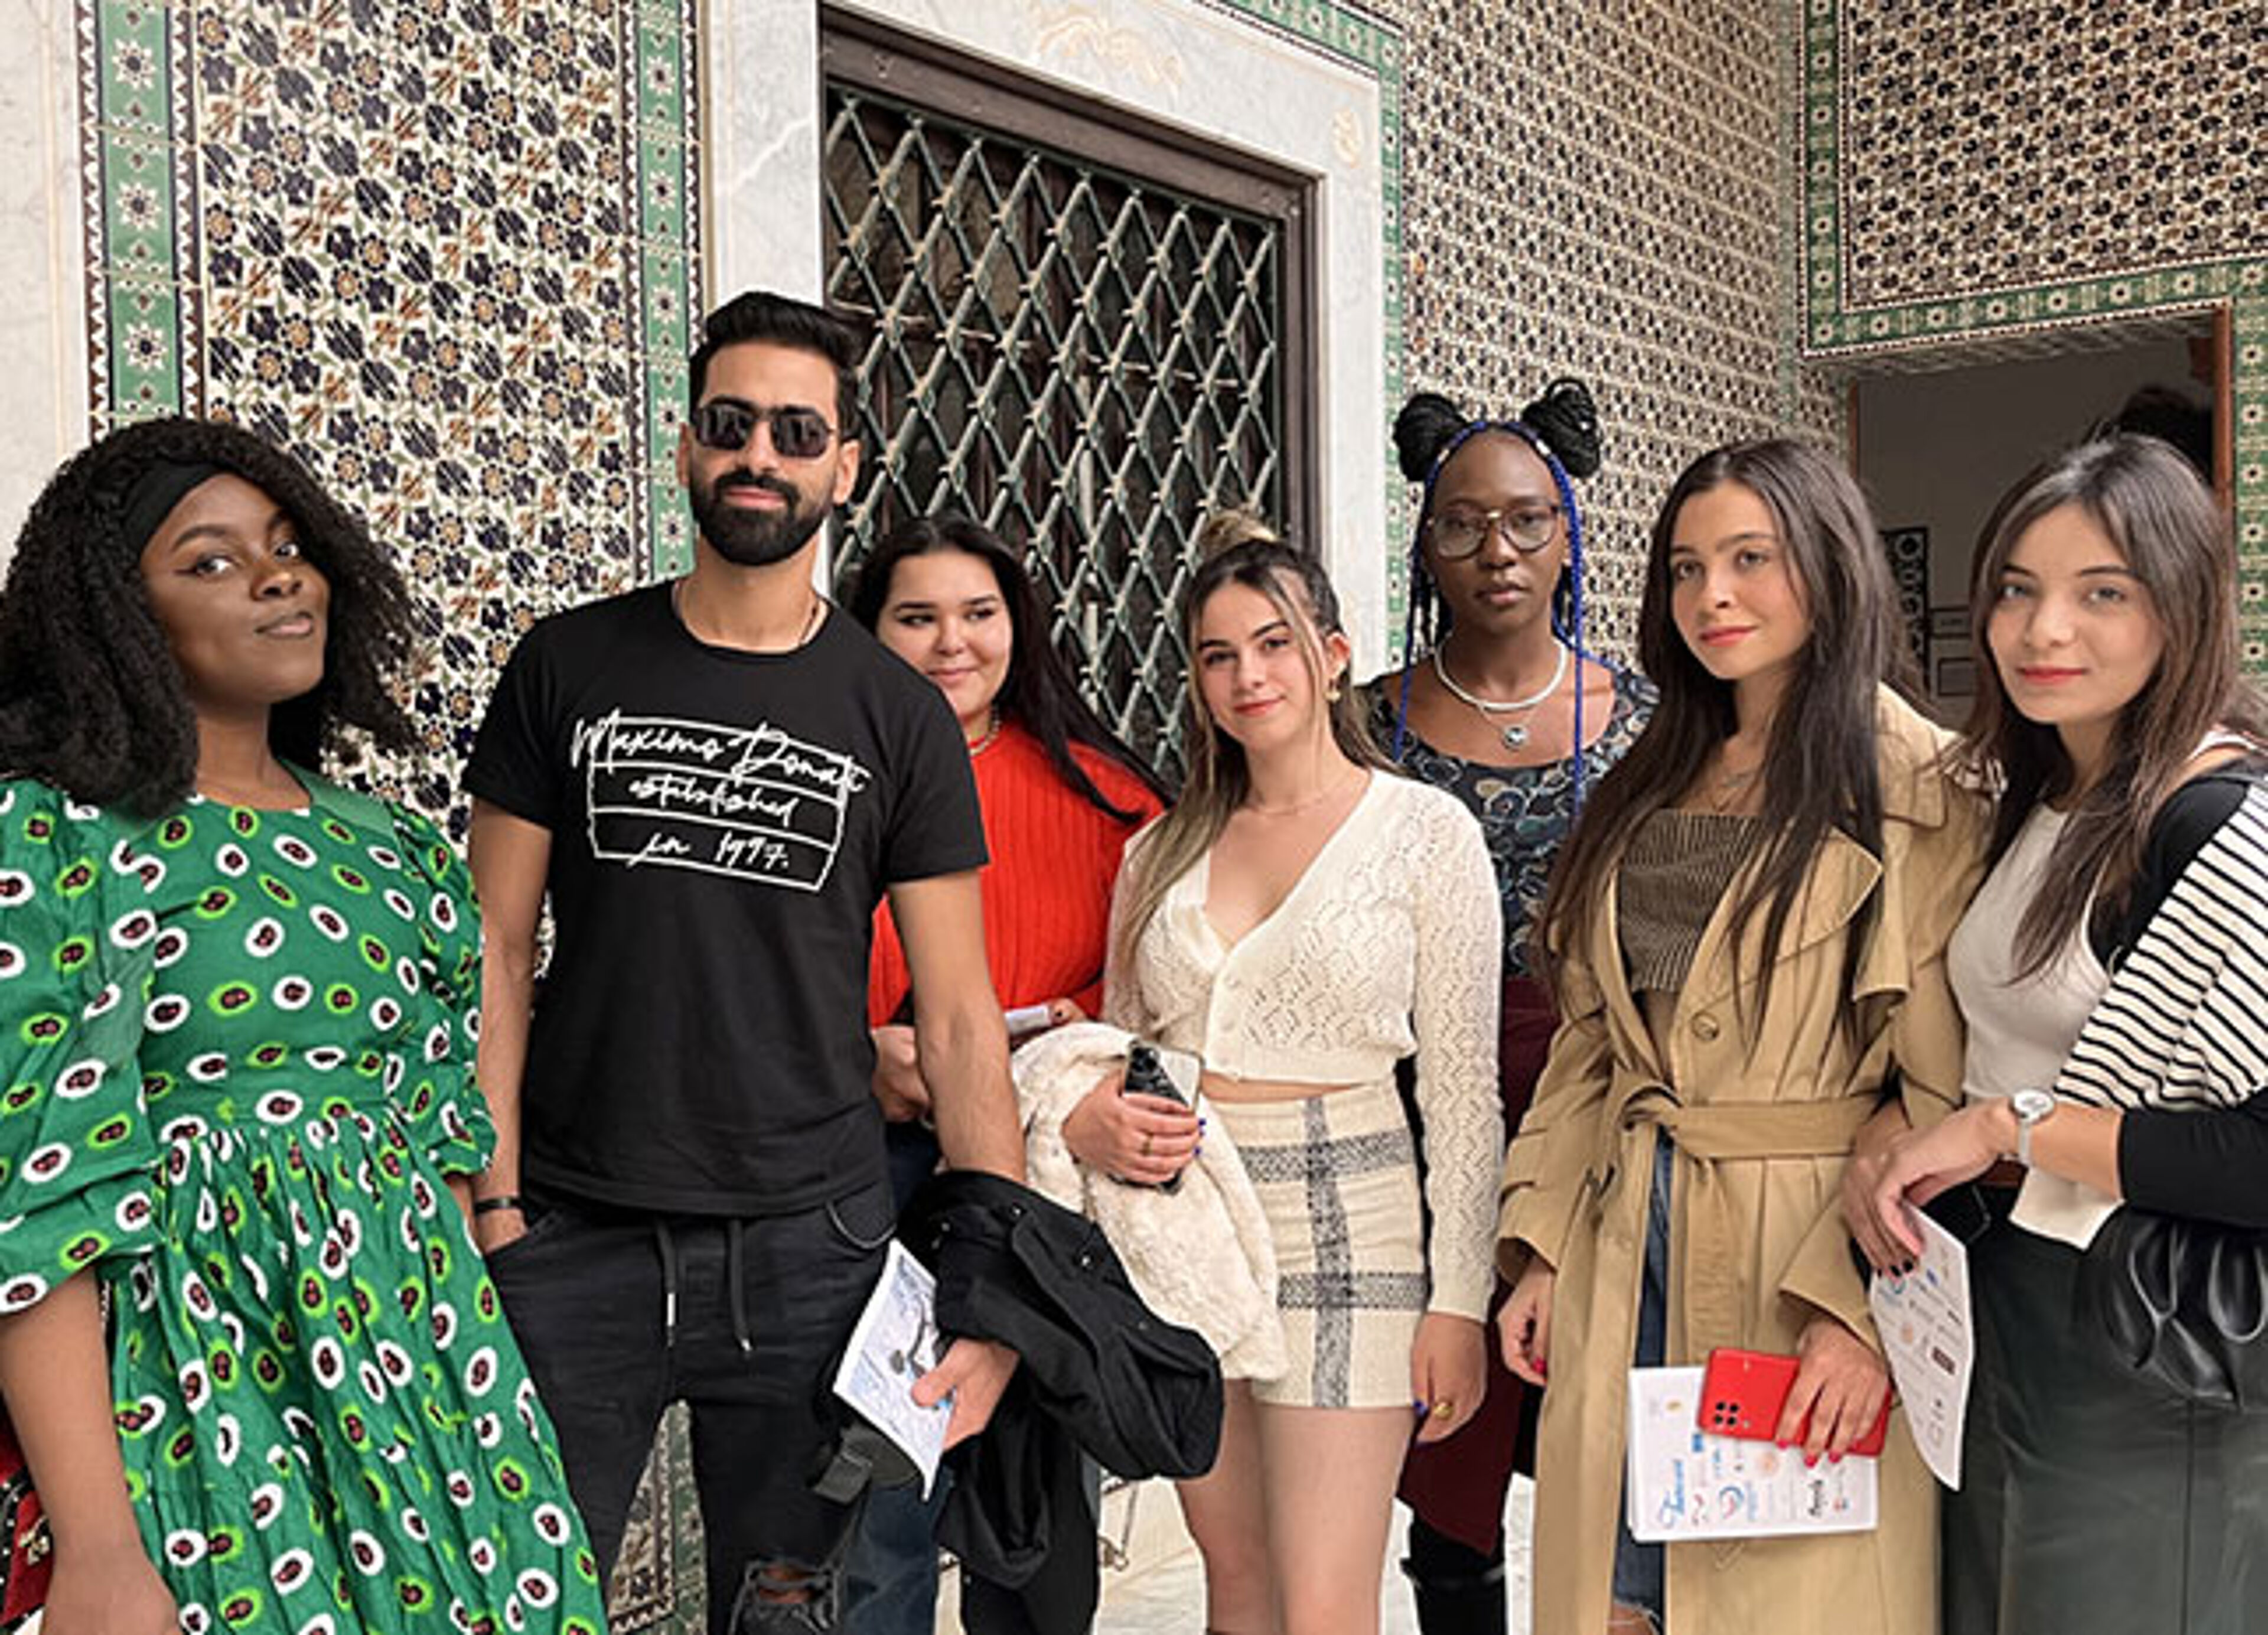 Un groupe de six personnes à la pointe de la mode pose ensemble devant une mosaïque traditionnelle, dégageant confiance et style.